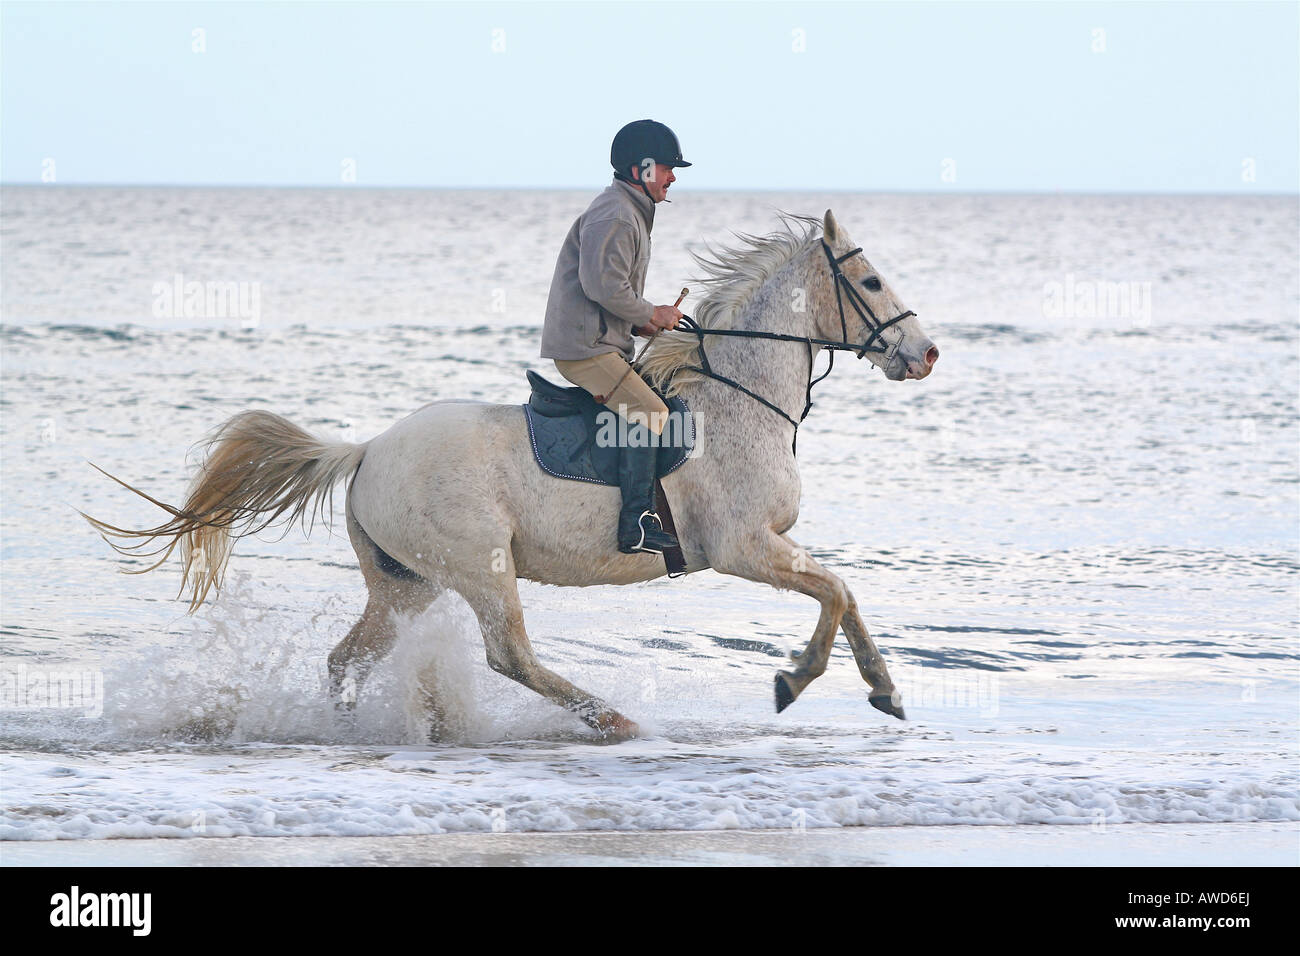 Horse Rider éclaboussant par les vagues sur la plage Utah Normandie France Banque D'Images